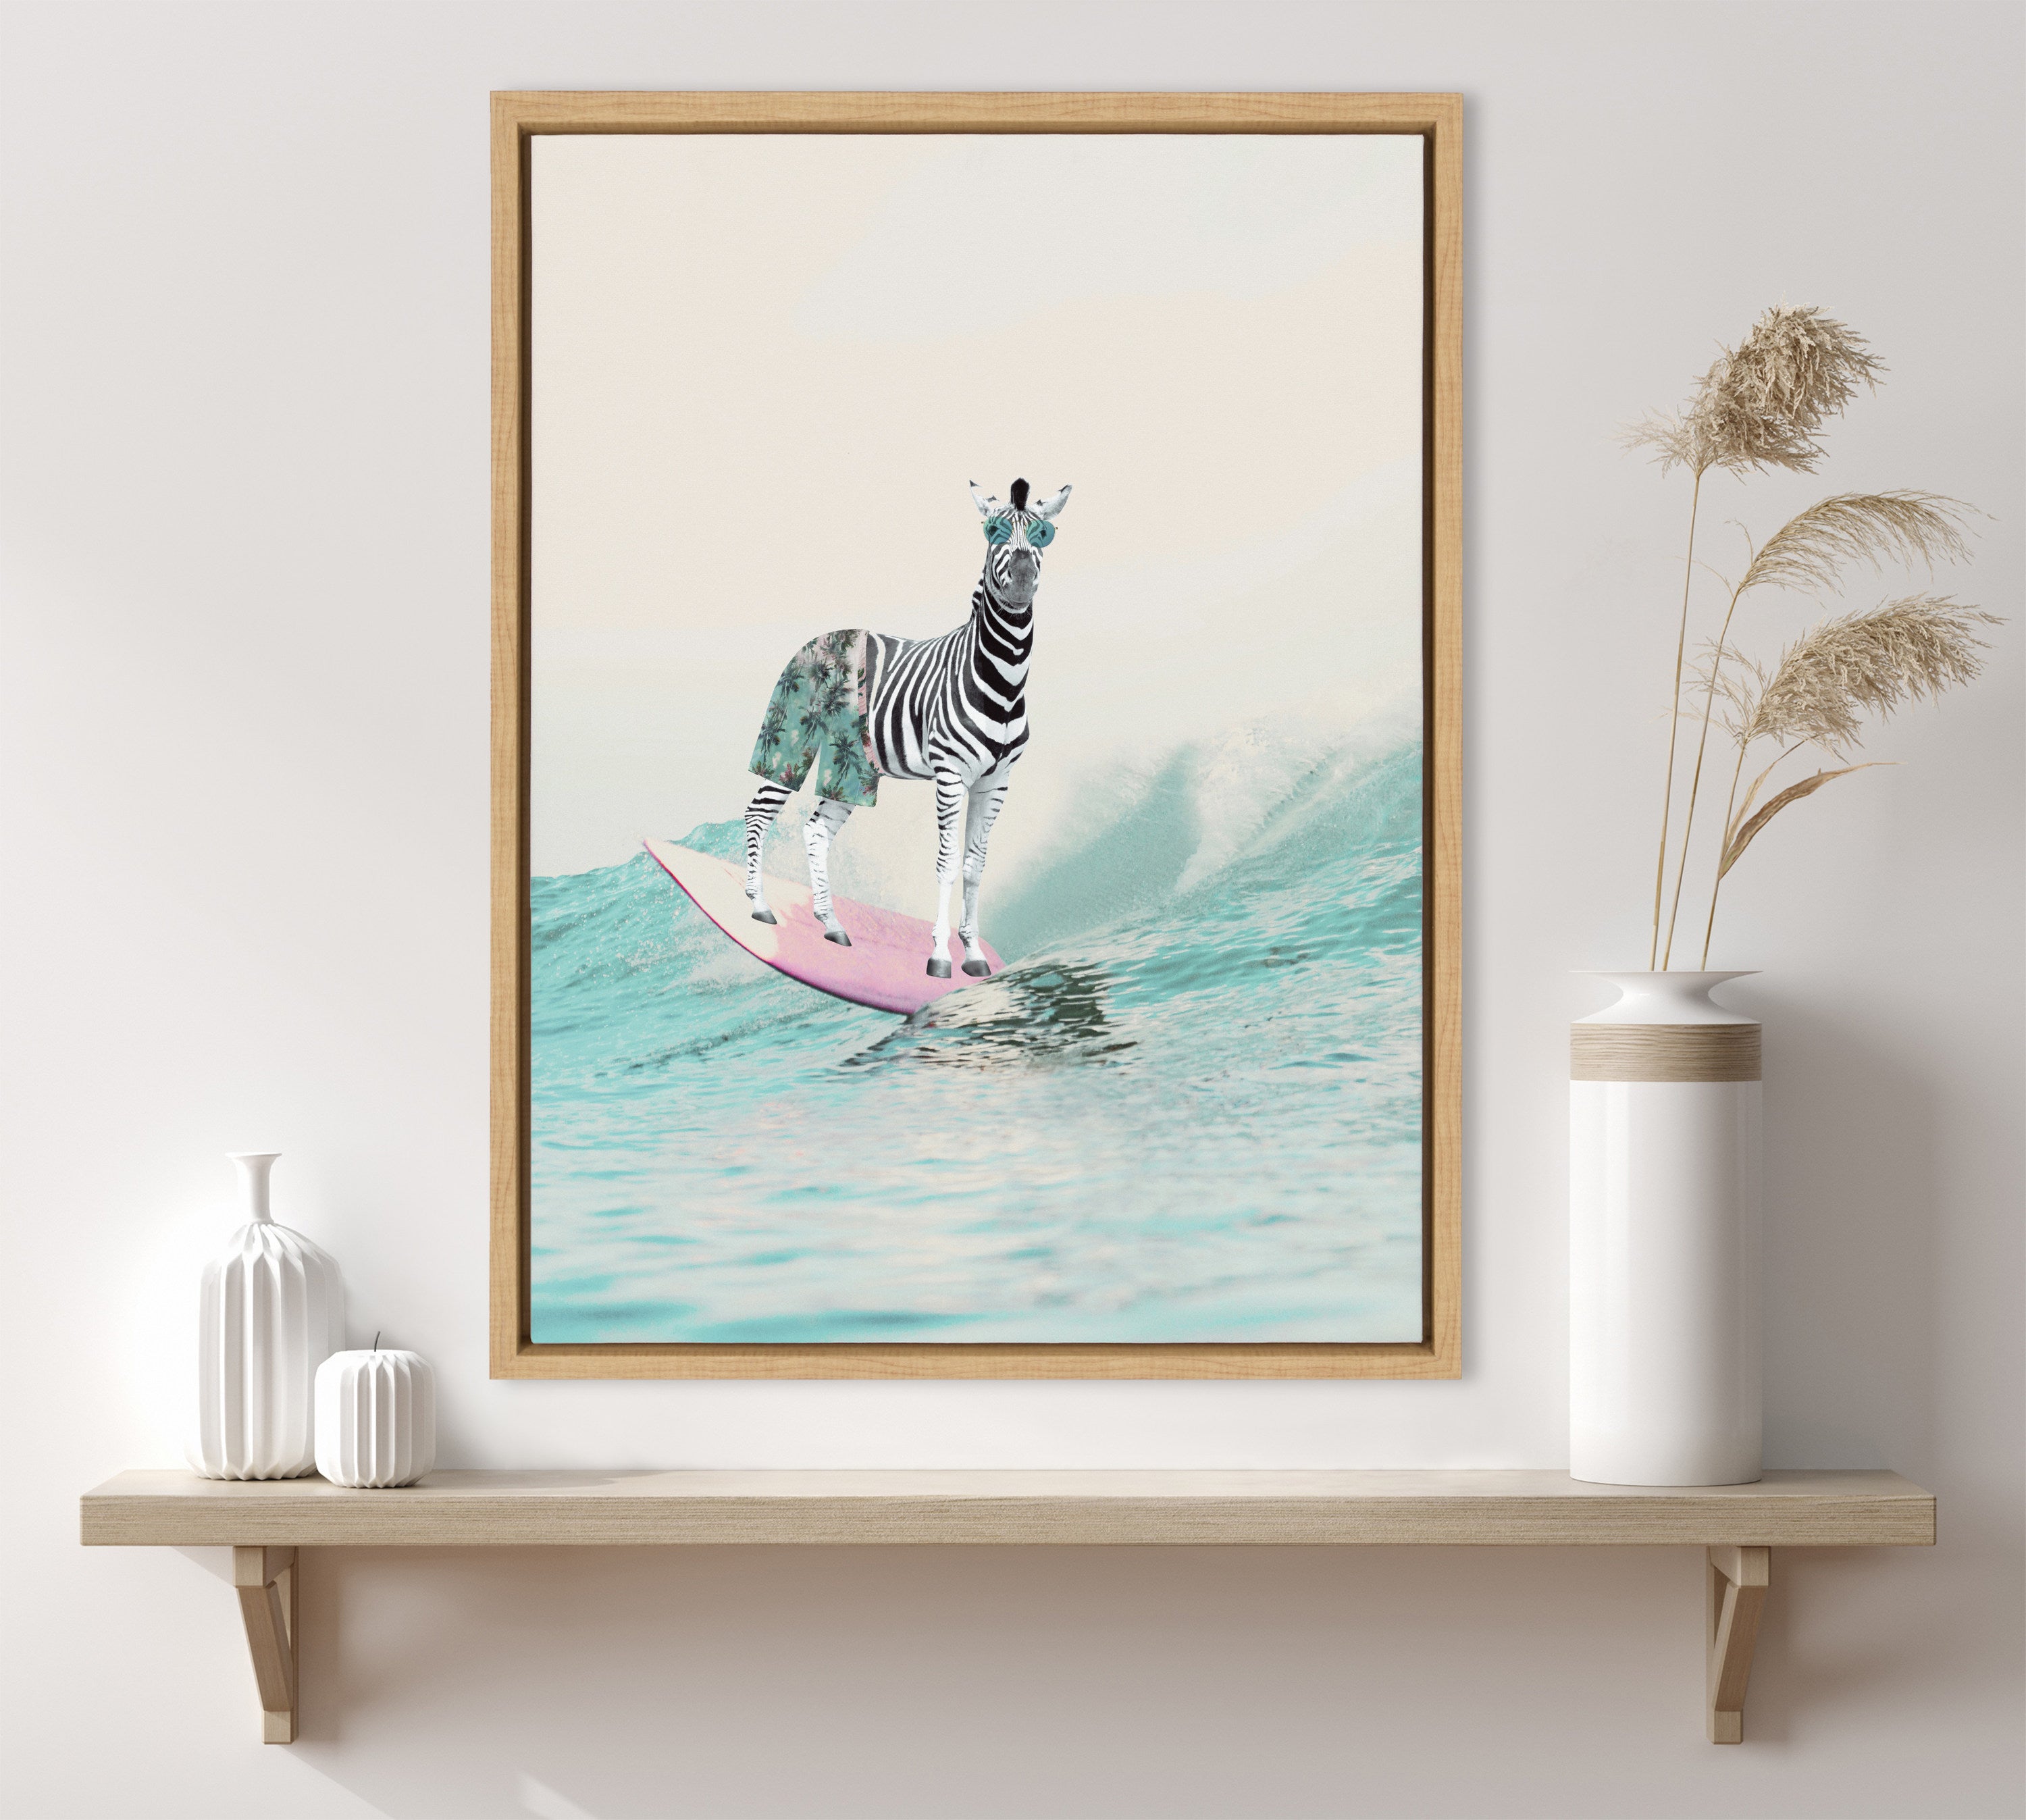 Sylvie Zebra Surfer Framed Canvas by July Art Prints